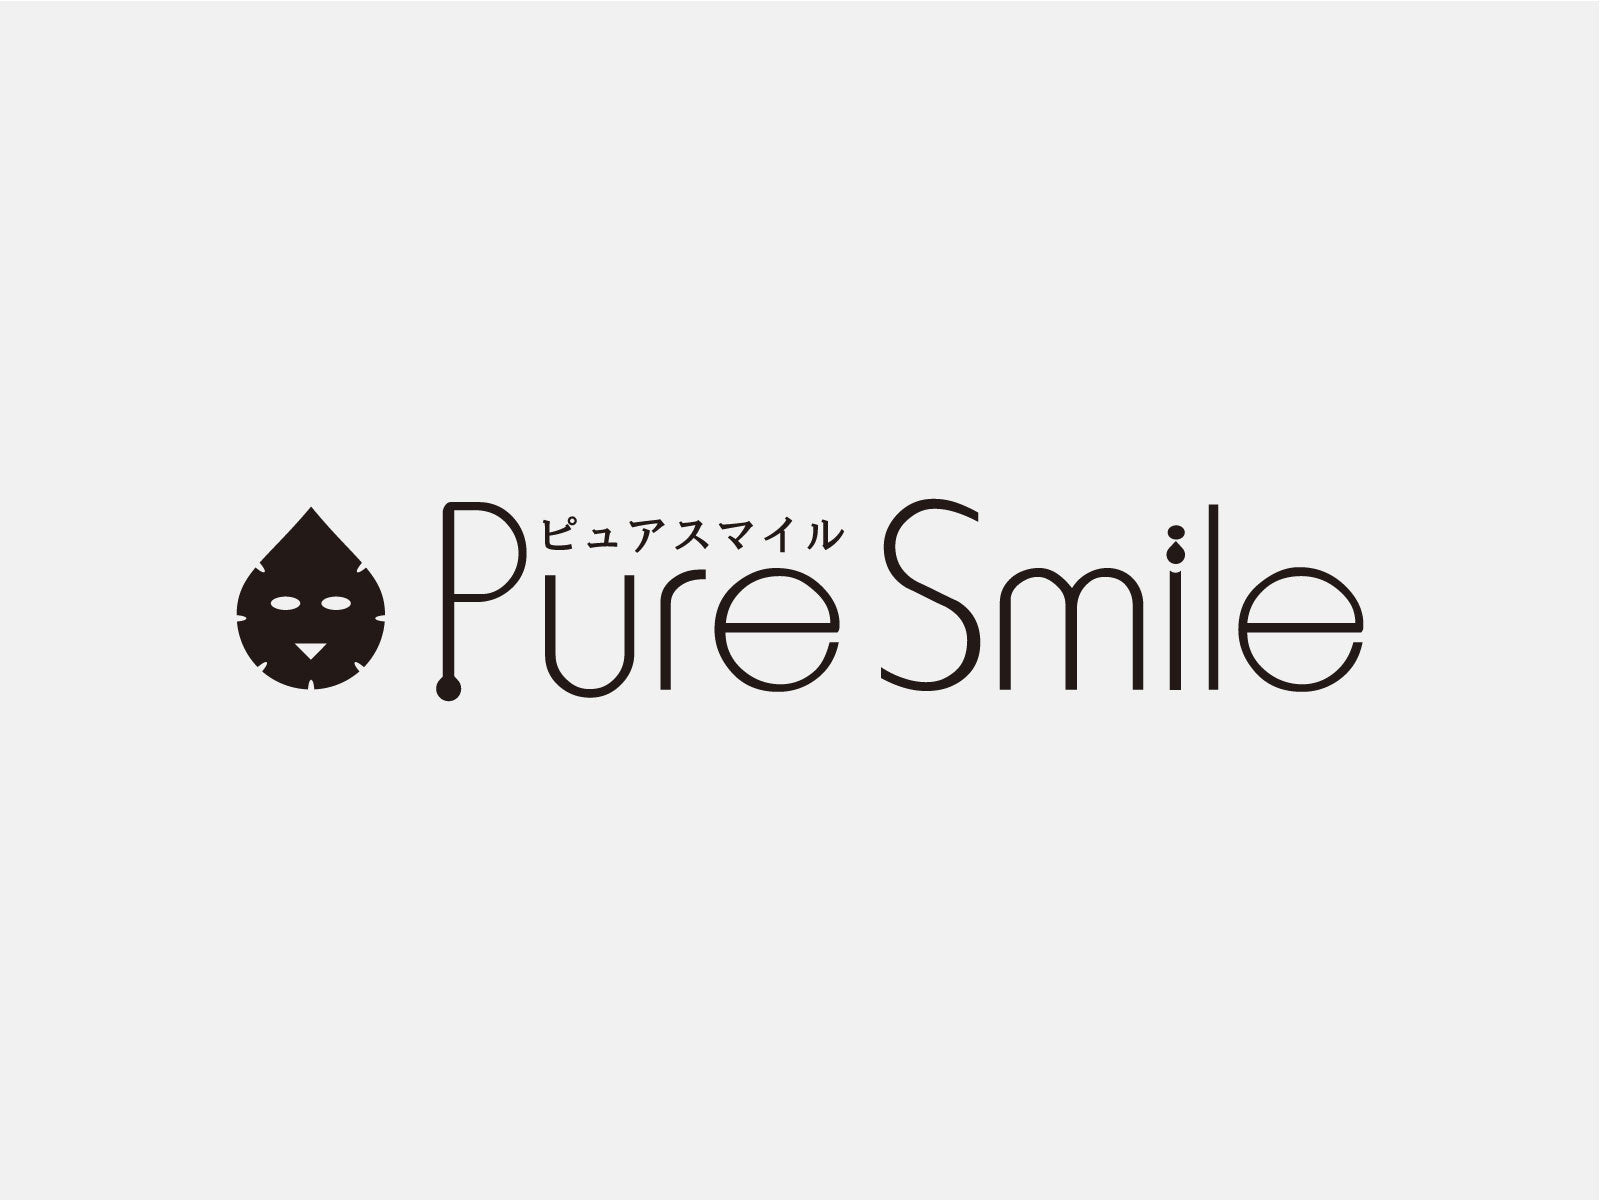 Pure smile